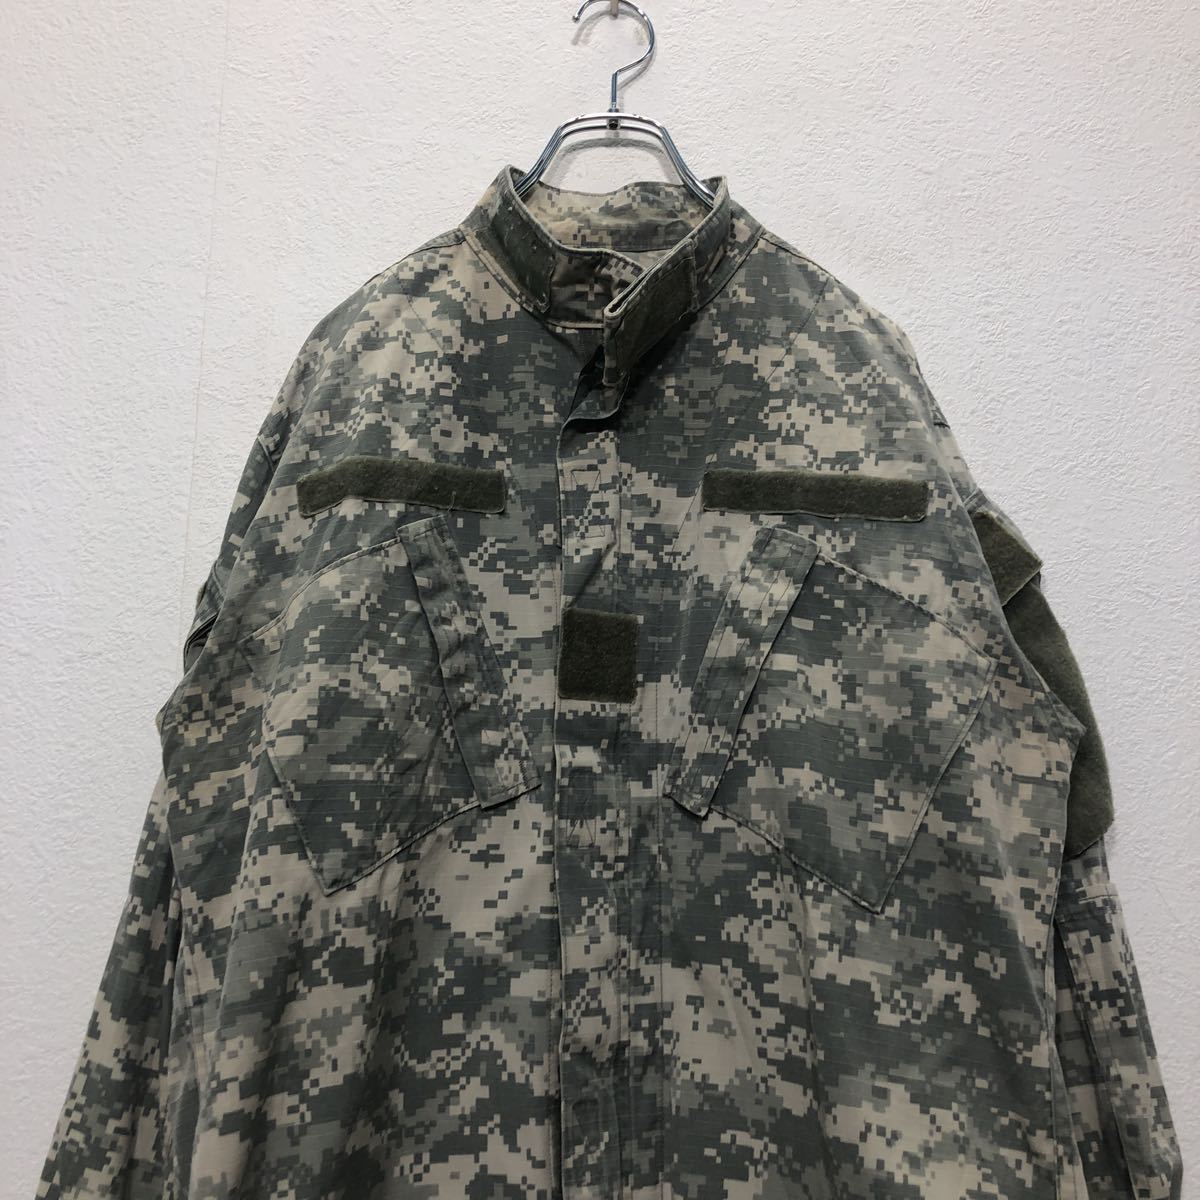  военный    цифровая ... ... пиджак   "губа" ... вершина  M размер    американская армия   0 5 лет   раз ... итого    бу одежда ...  Америка ... a502-5357